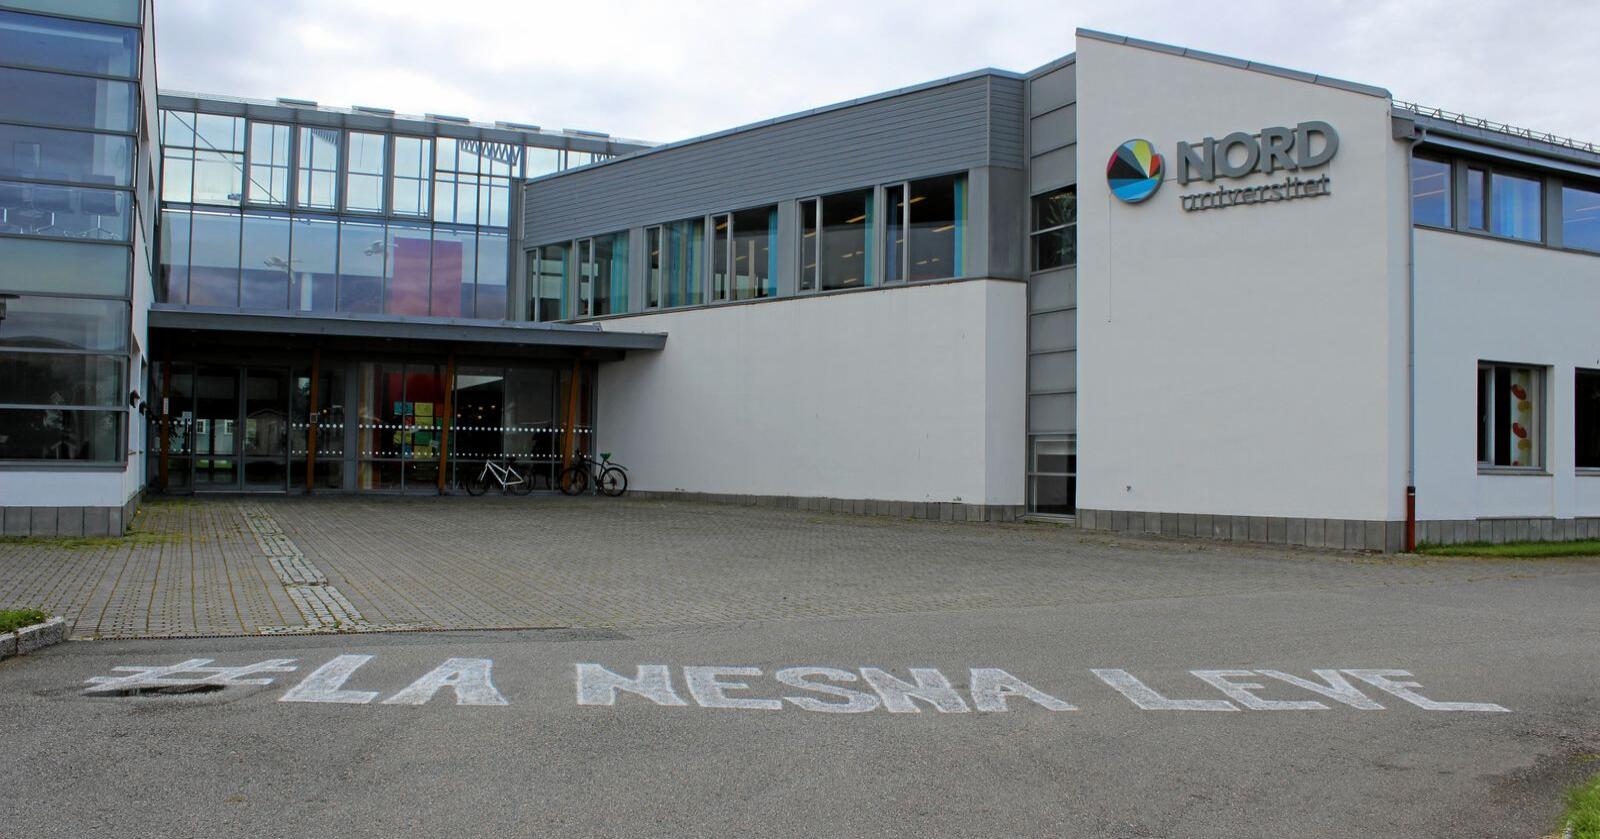 Sterkt engasjement: Nord universitet  sitt vedtak om å legge ned Campus Nesna, har ført til eit sterkt engasjement på Helgeland. Foto: Janne Grete Aspen